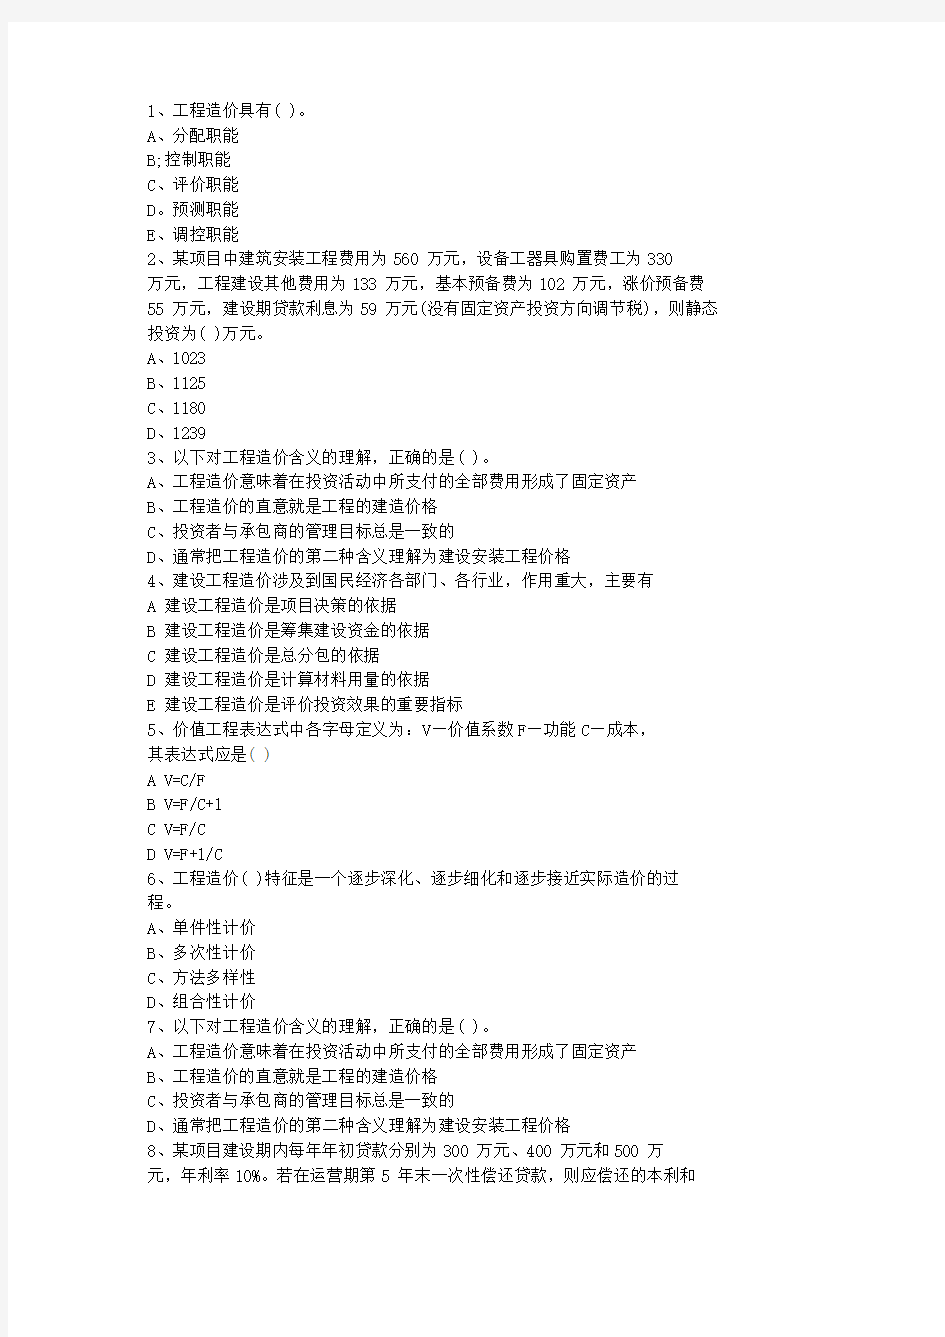 2011青海省造价员考试试题及答案全(打印版)试题及答案